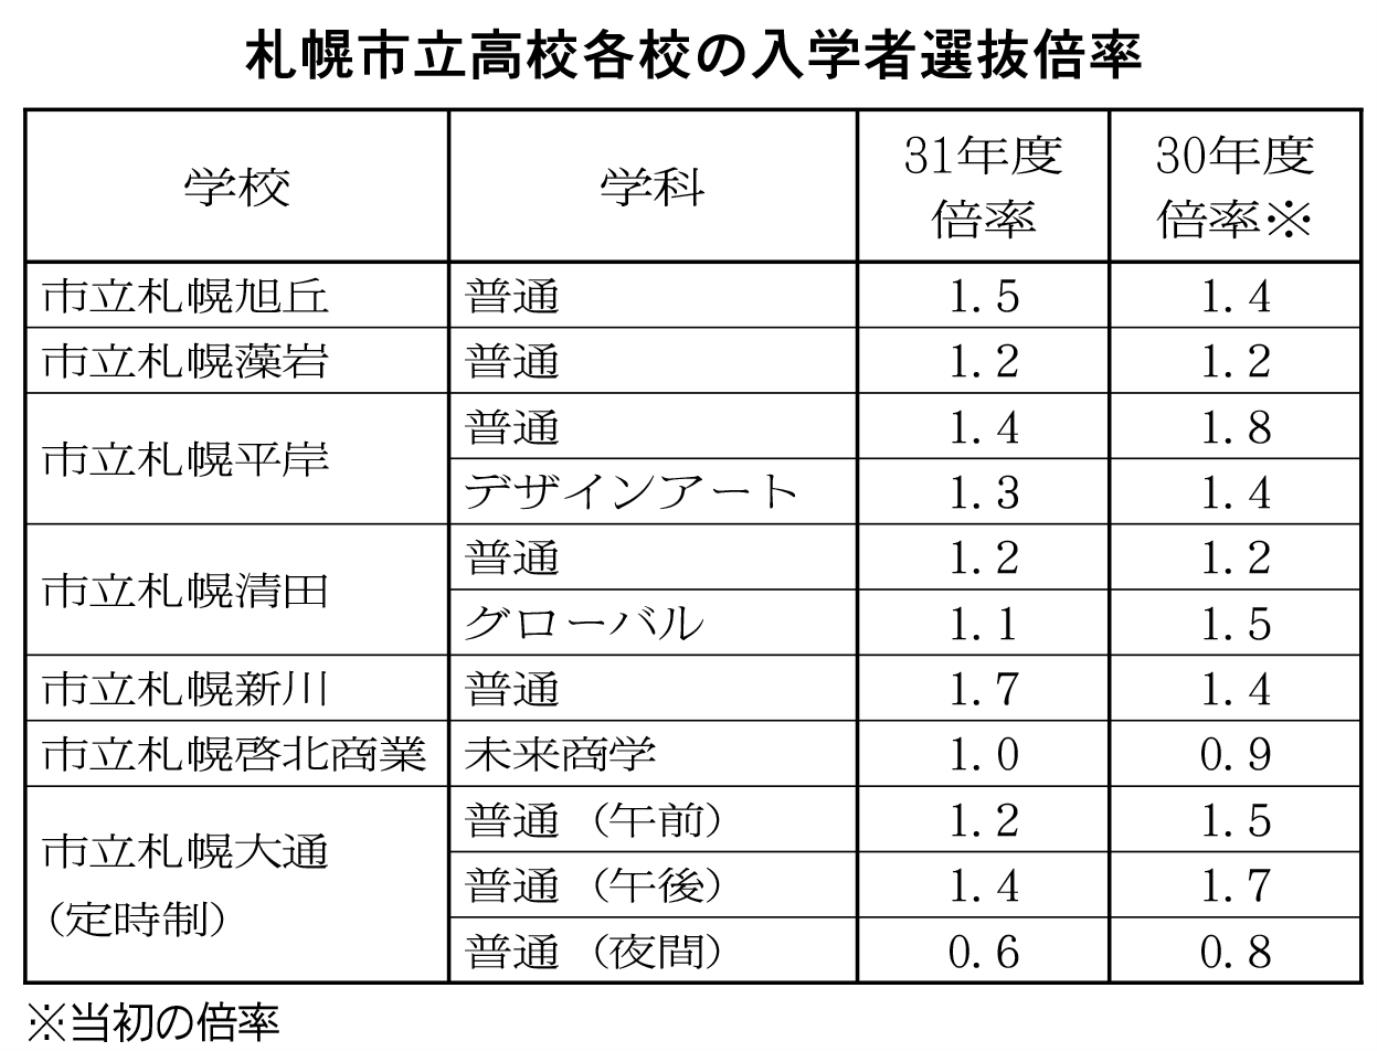 札幌市立高校格好の入学者選抜倍率